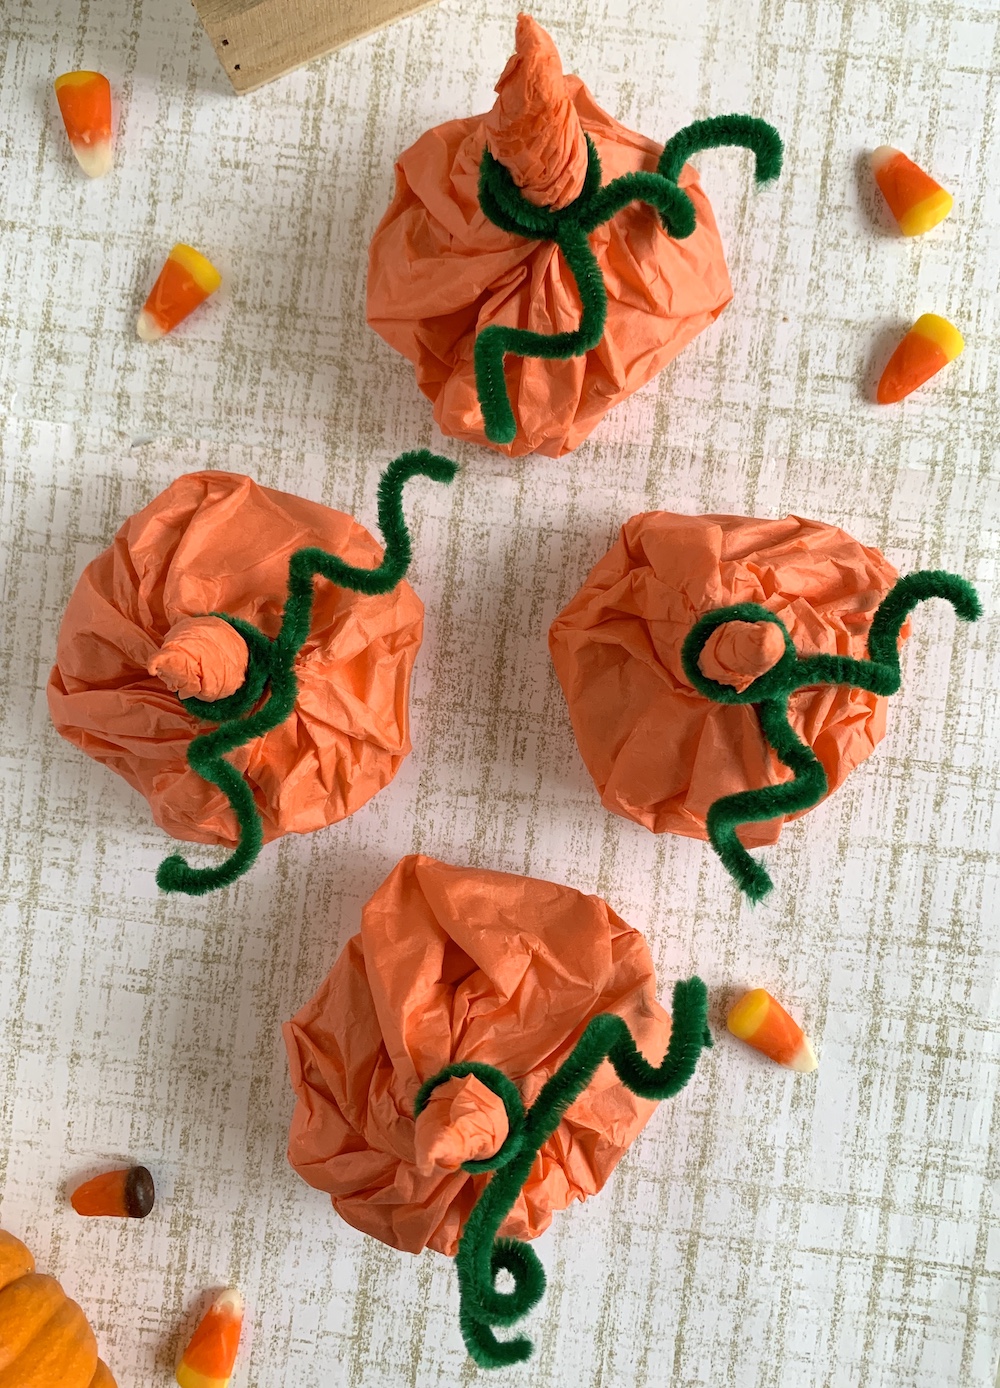 Easy DIY: Tissue Paper Oranges